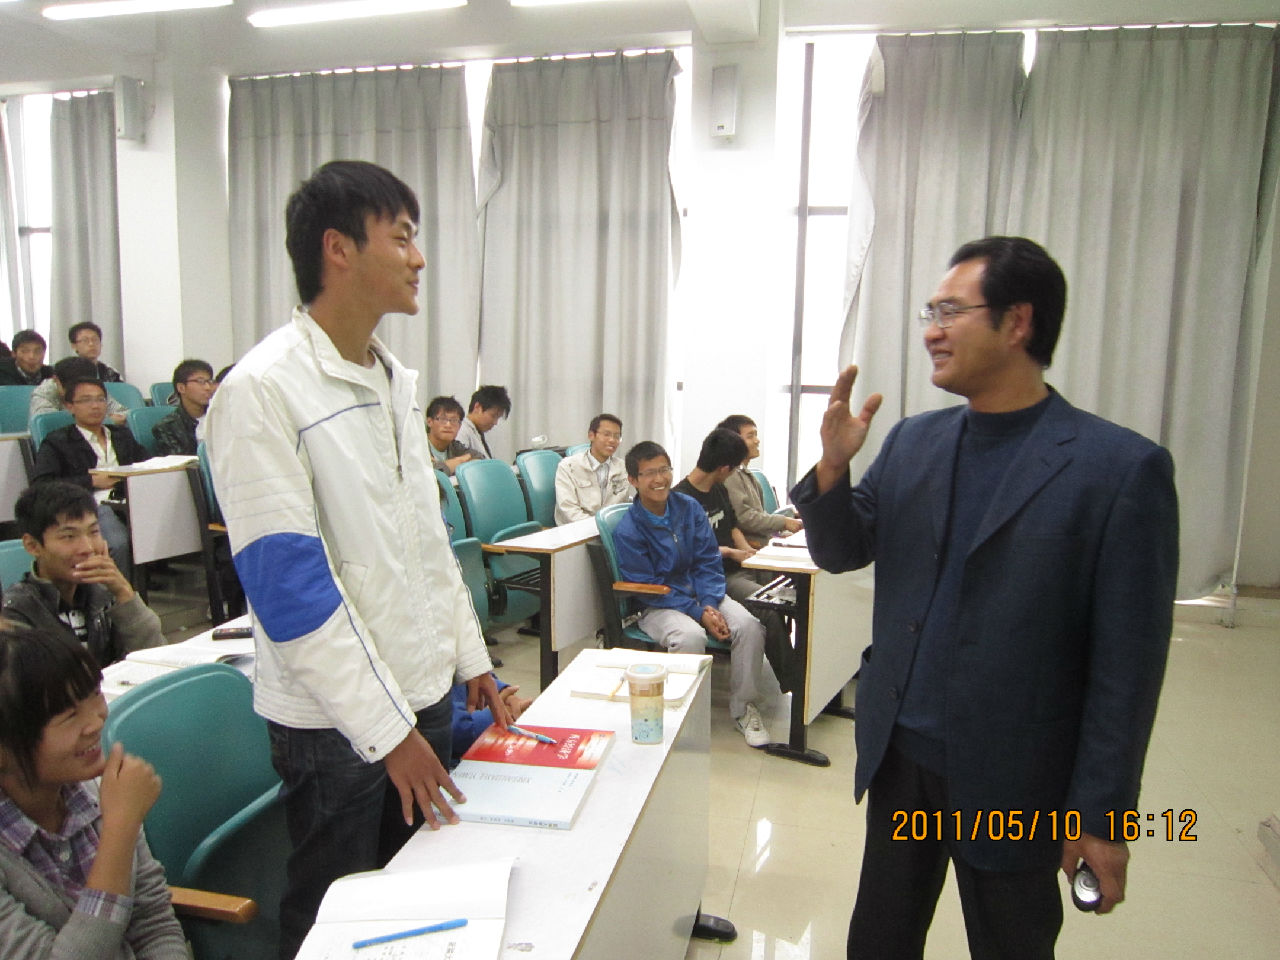 陳世傑教授在與學生互動